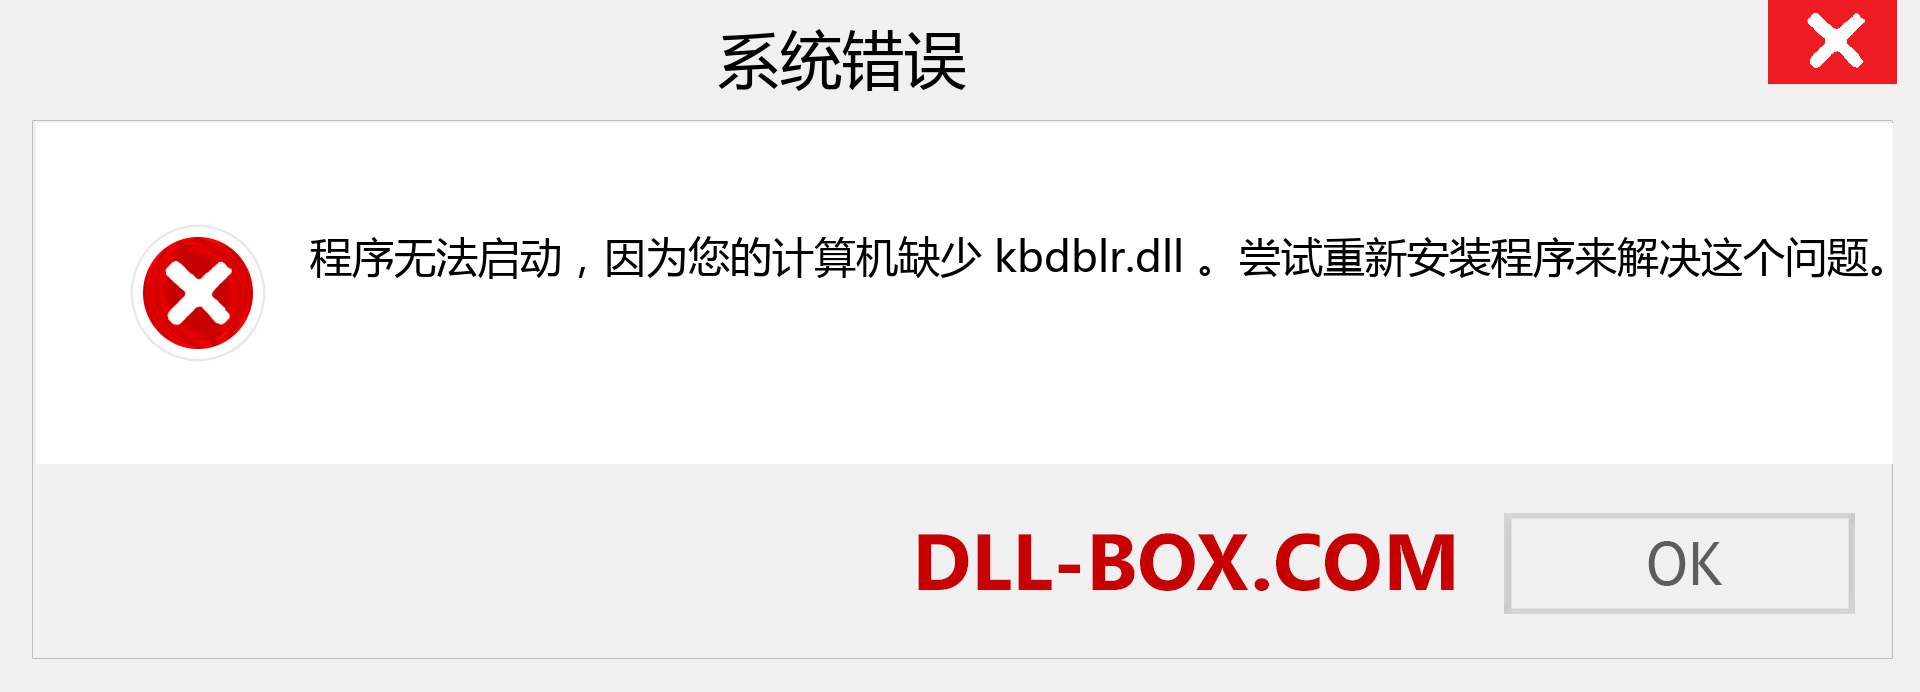 kbdblr.dll 文件丢失？。 适用于 Windows 7、8、10 的下载 - 修复 Windows、照片、图像上的 kbdblr dll 丢失错误